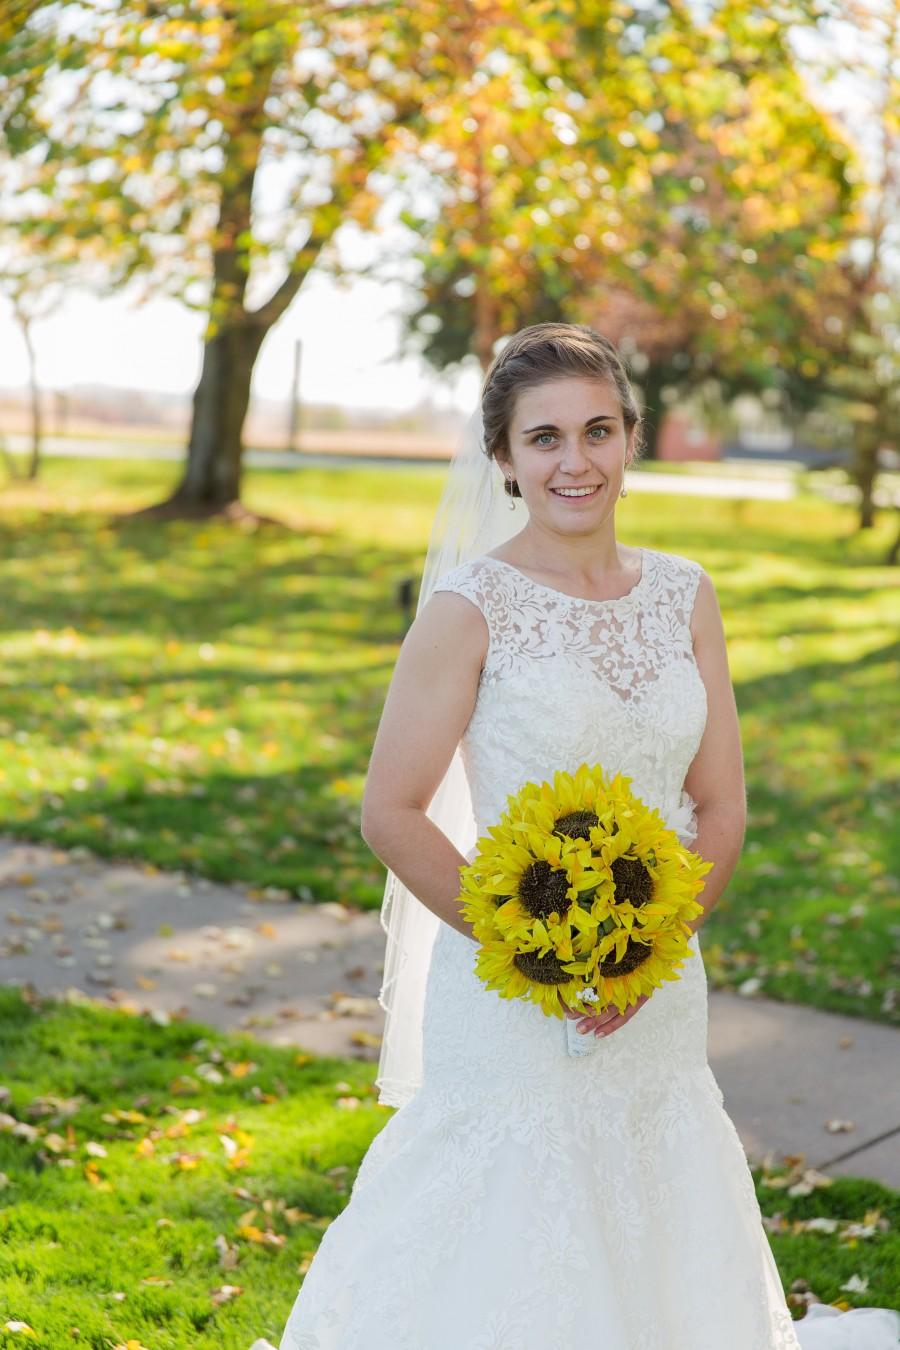 زفاف - Sunflower bridal bouquet! Wedding bouquet, bride bouquet, bouquet for wedding, sunflower, keepsake bouquet, sunflowers